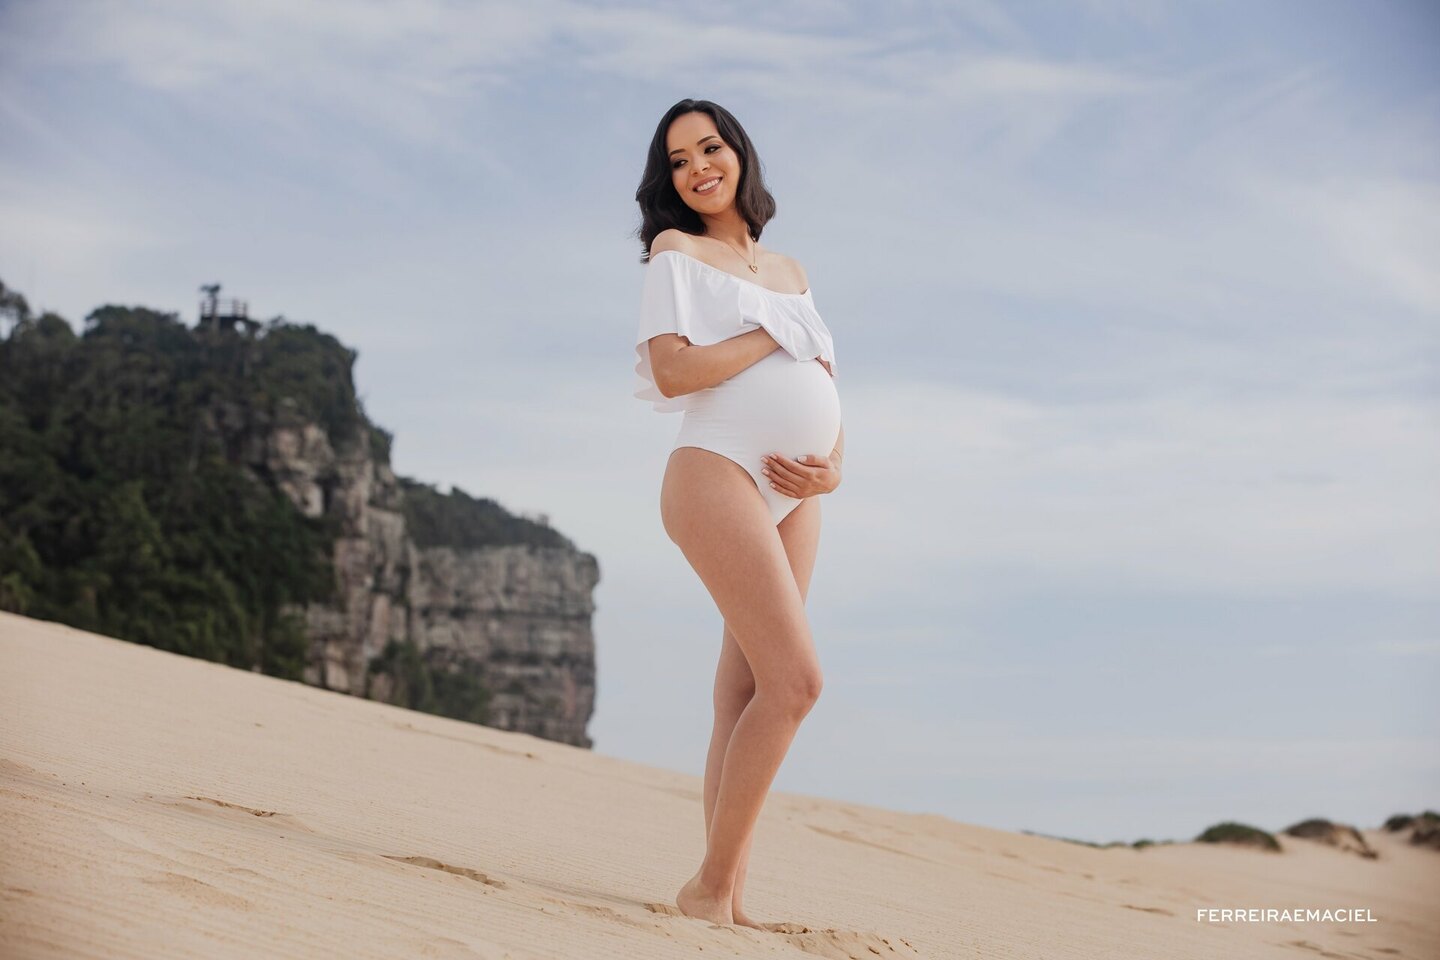 Ensaio fotográfico de Gestante na praia e nas dunas do Morro dos Conventos em Araranguá - SC- Fotografia de gravidez em sessão externa de fotos - Taise